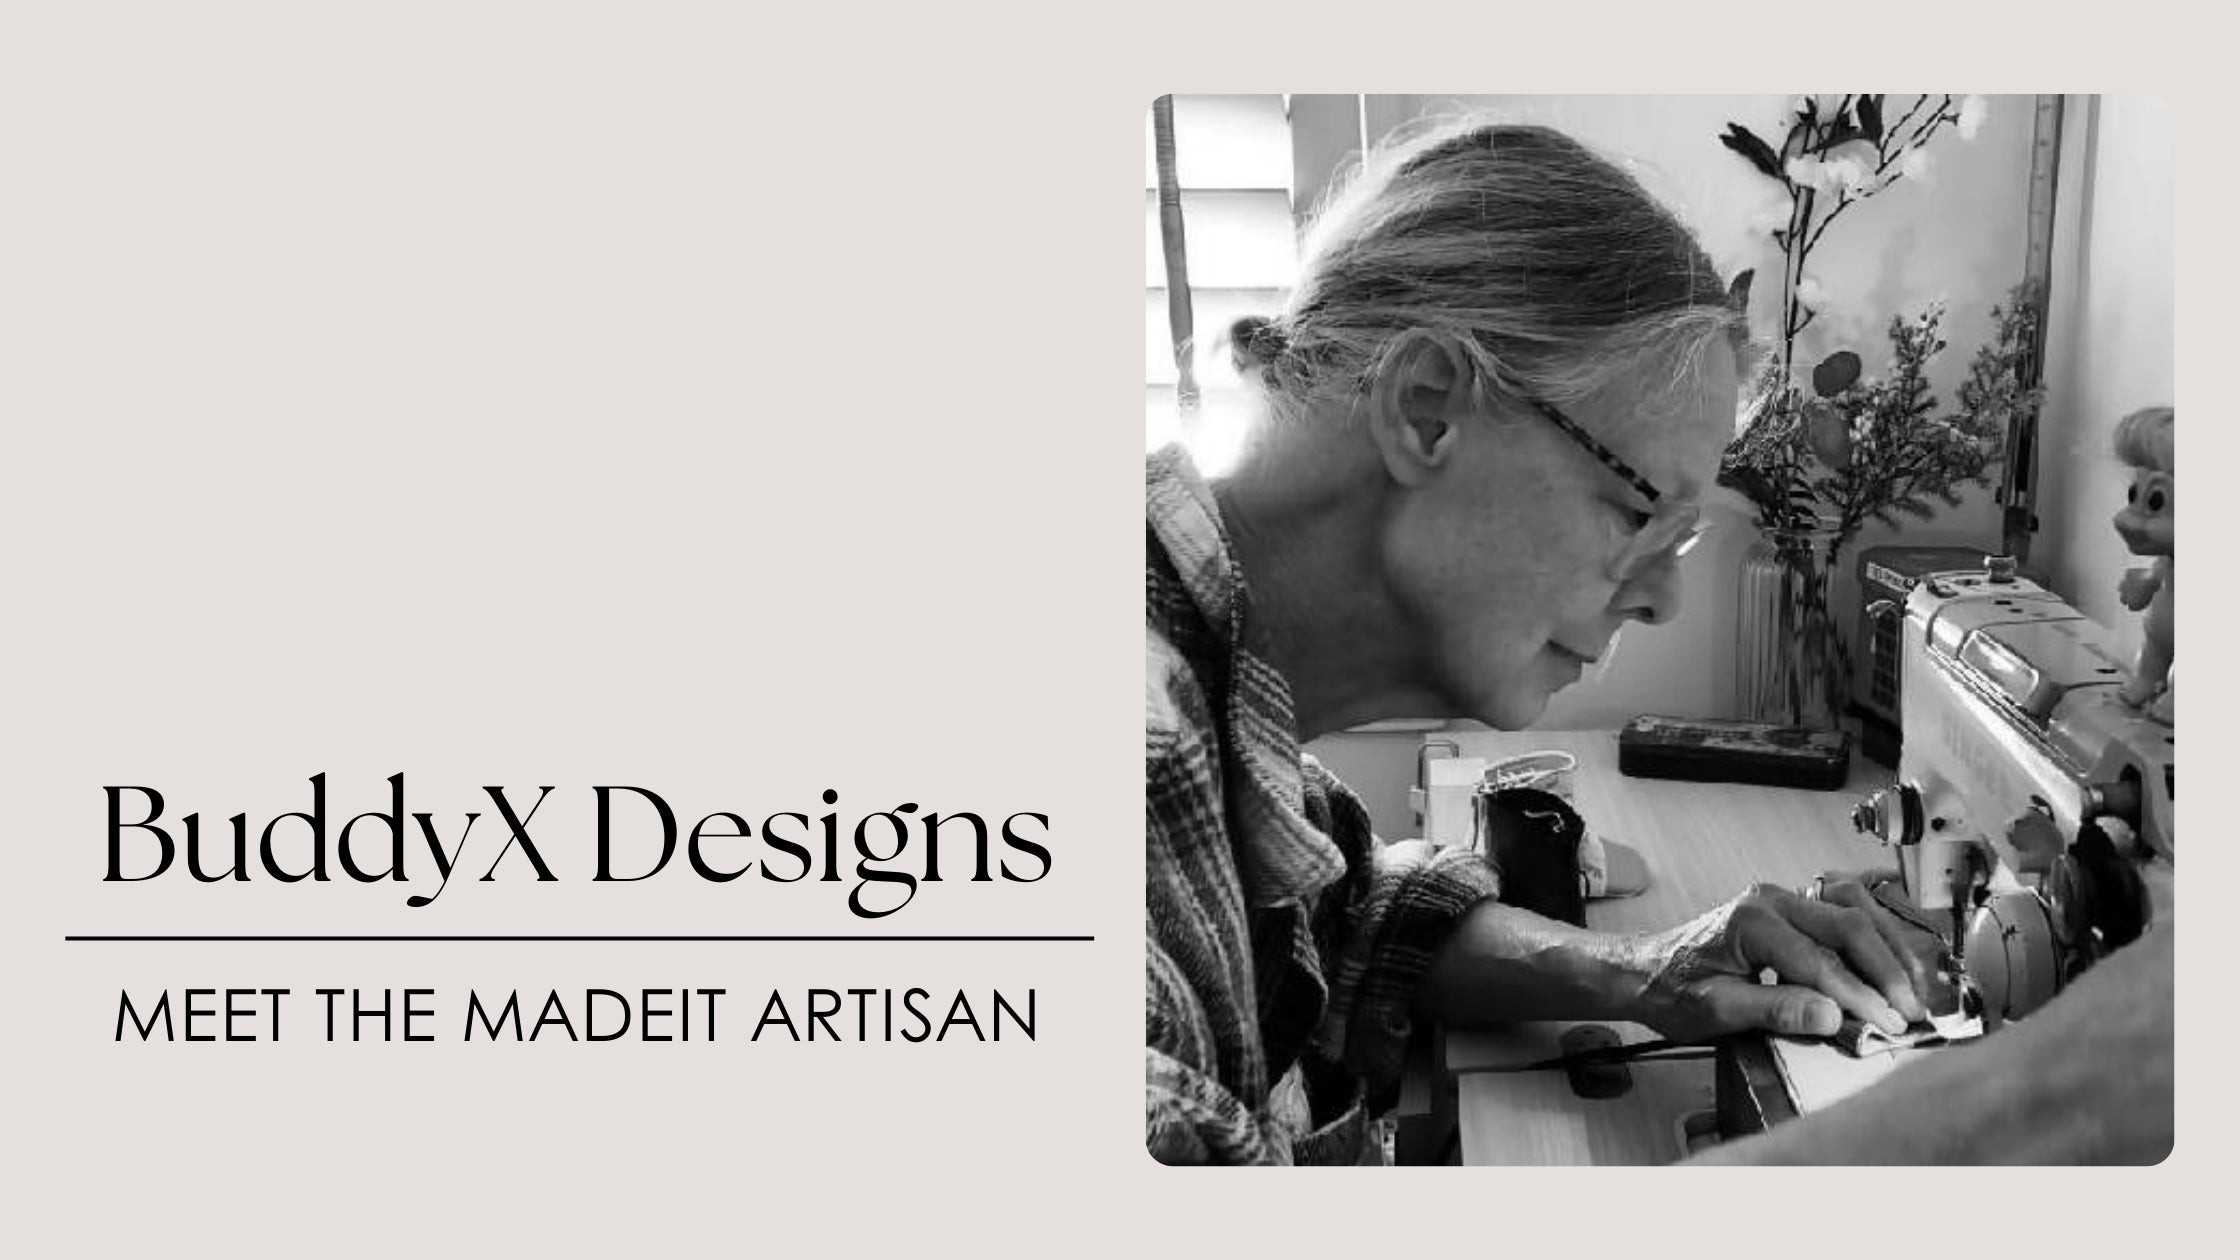 Meet the Artist: BuddyX designs